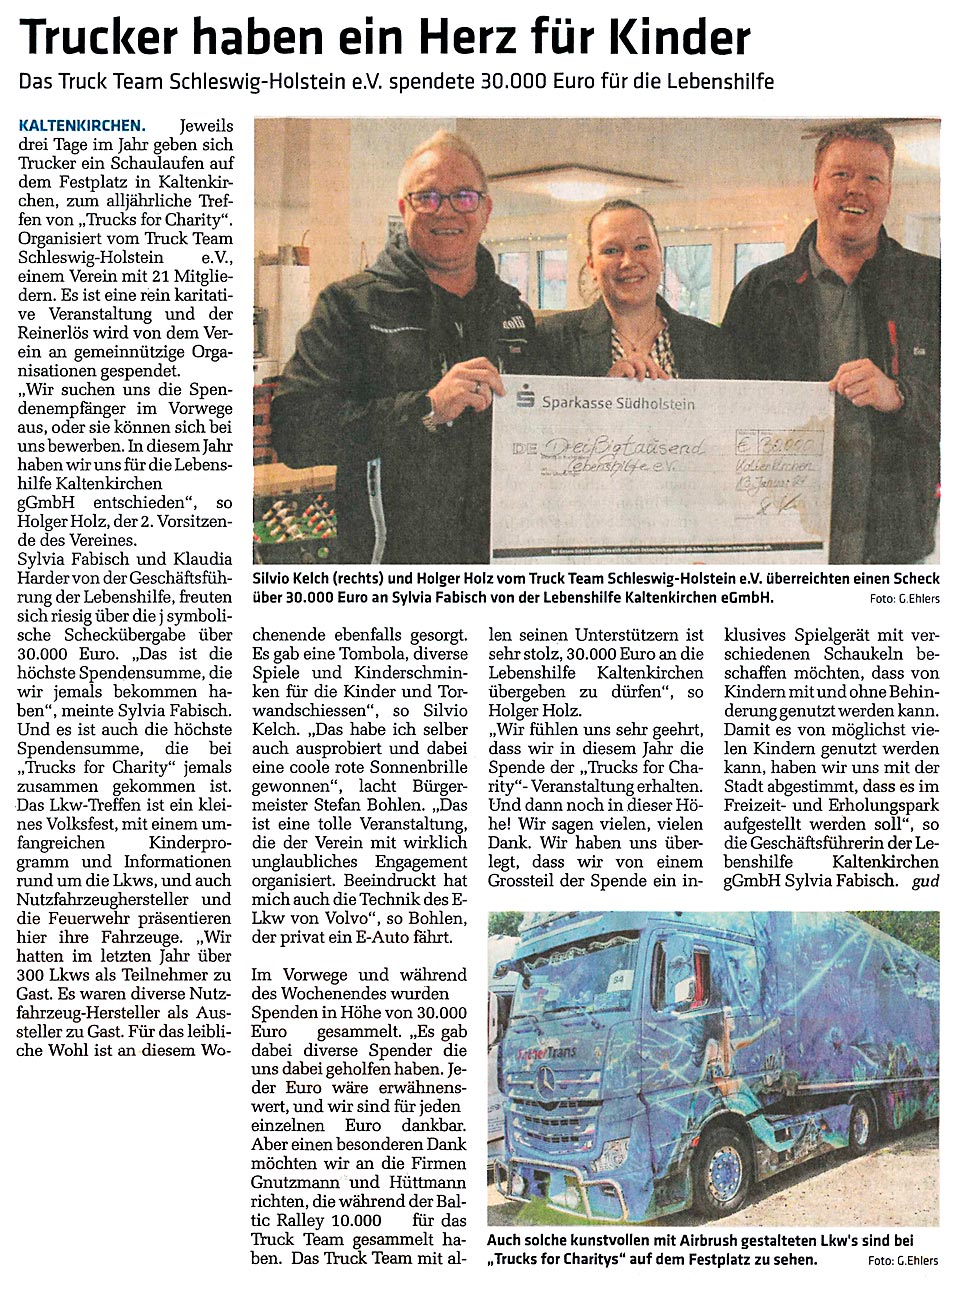 Umschau Kaltenkirchen vom 20.01.24 über eine Spende des Truck Team SH an die Lebenshilfe Schleswig-Holstein über 30.000 Euro